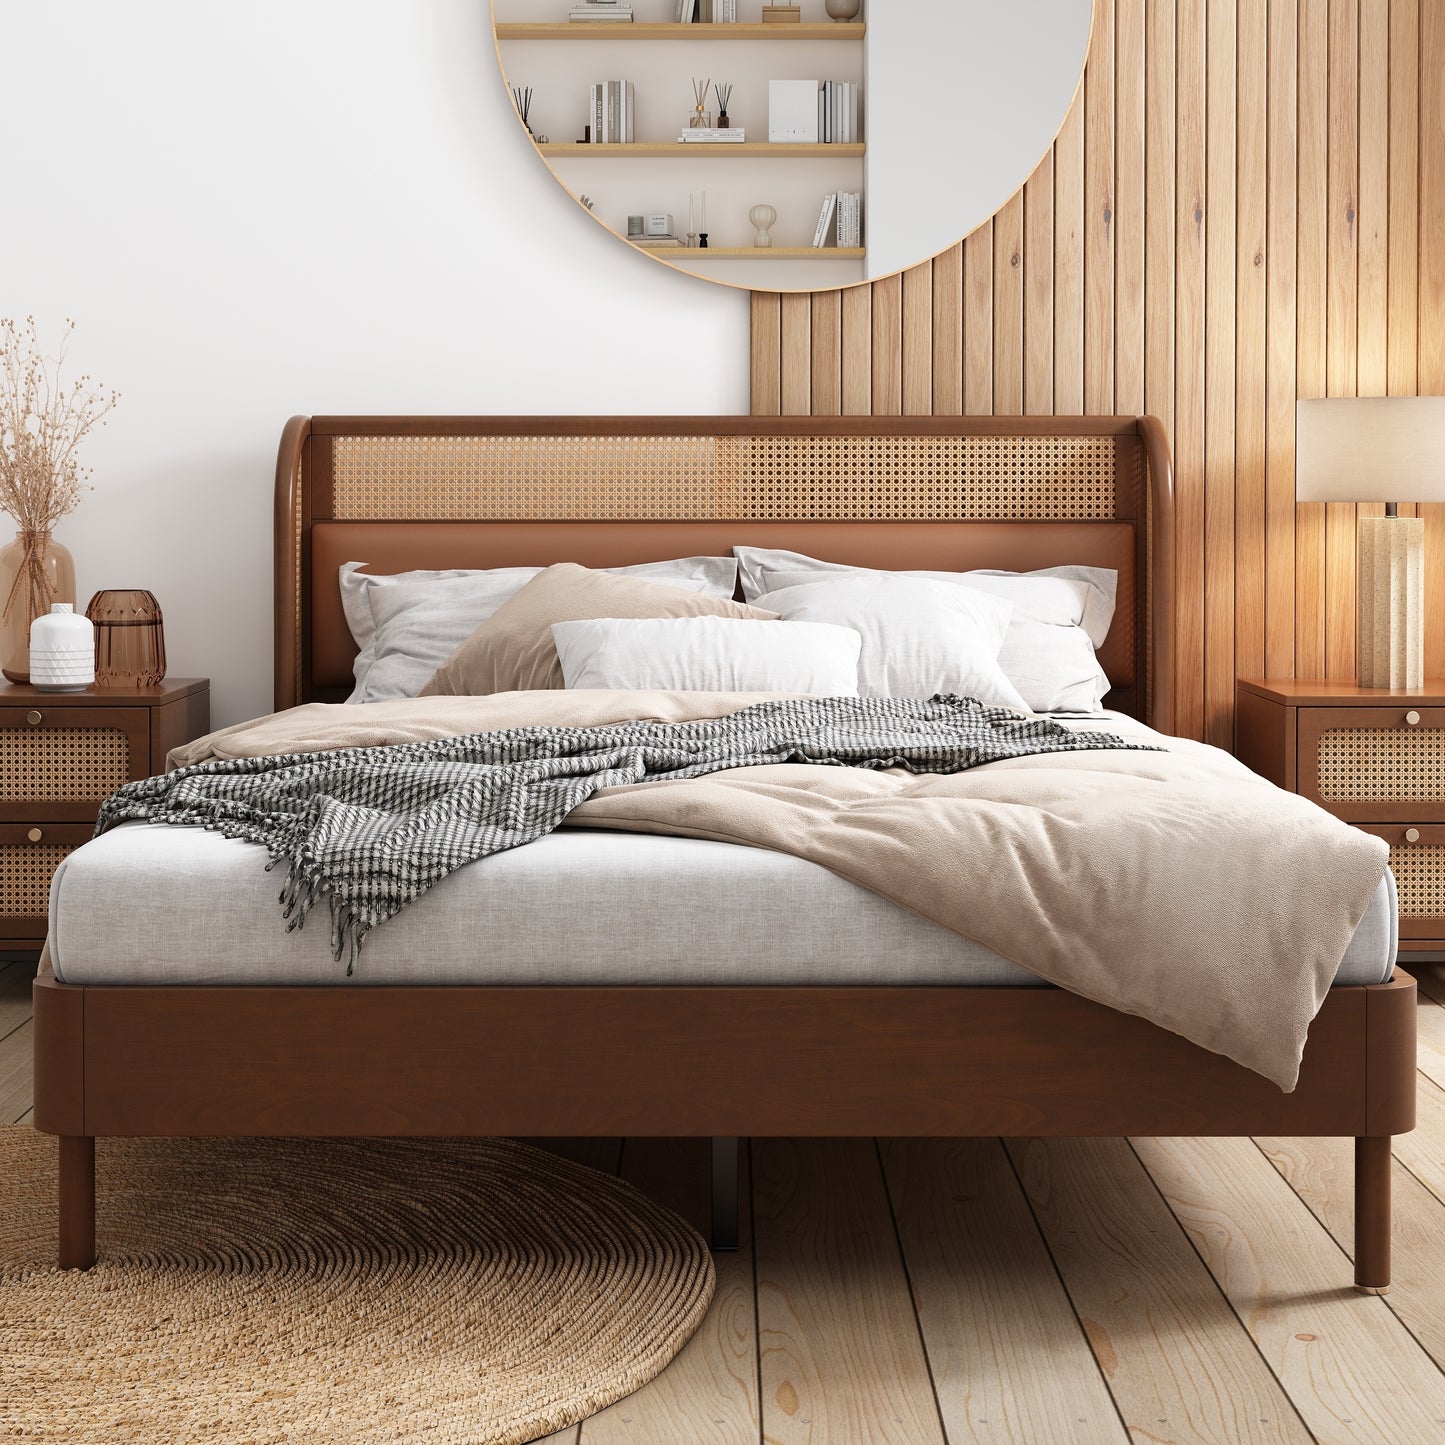 3 Piece Bedroom Set With Queen Bed